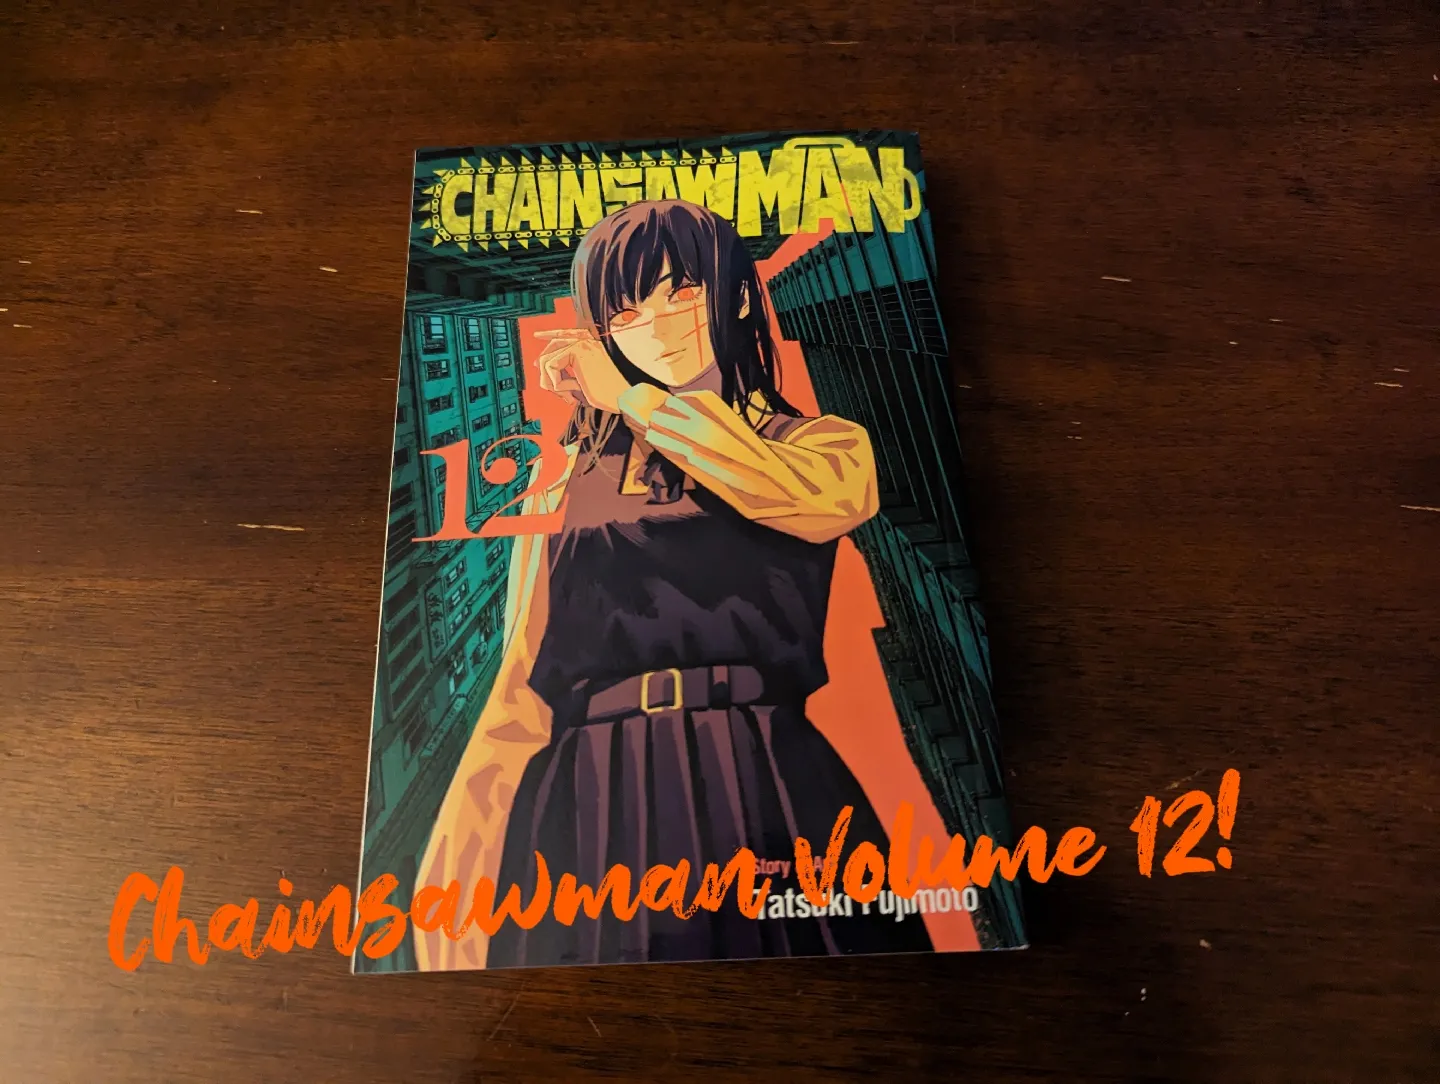 Chainsaw Man volume 9 UNBOXING #chainsawman #manga #mangaart